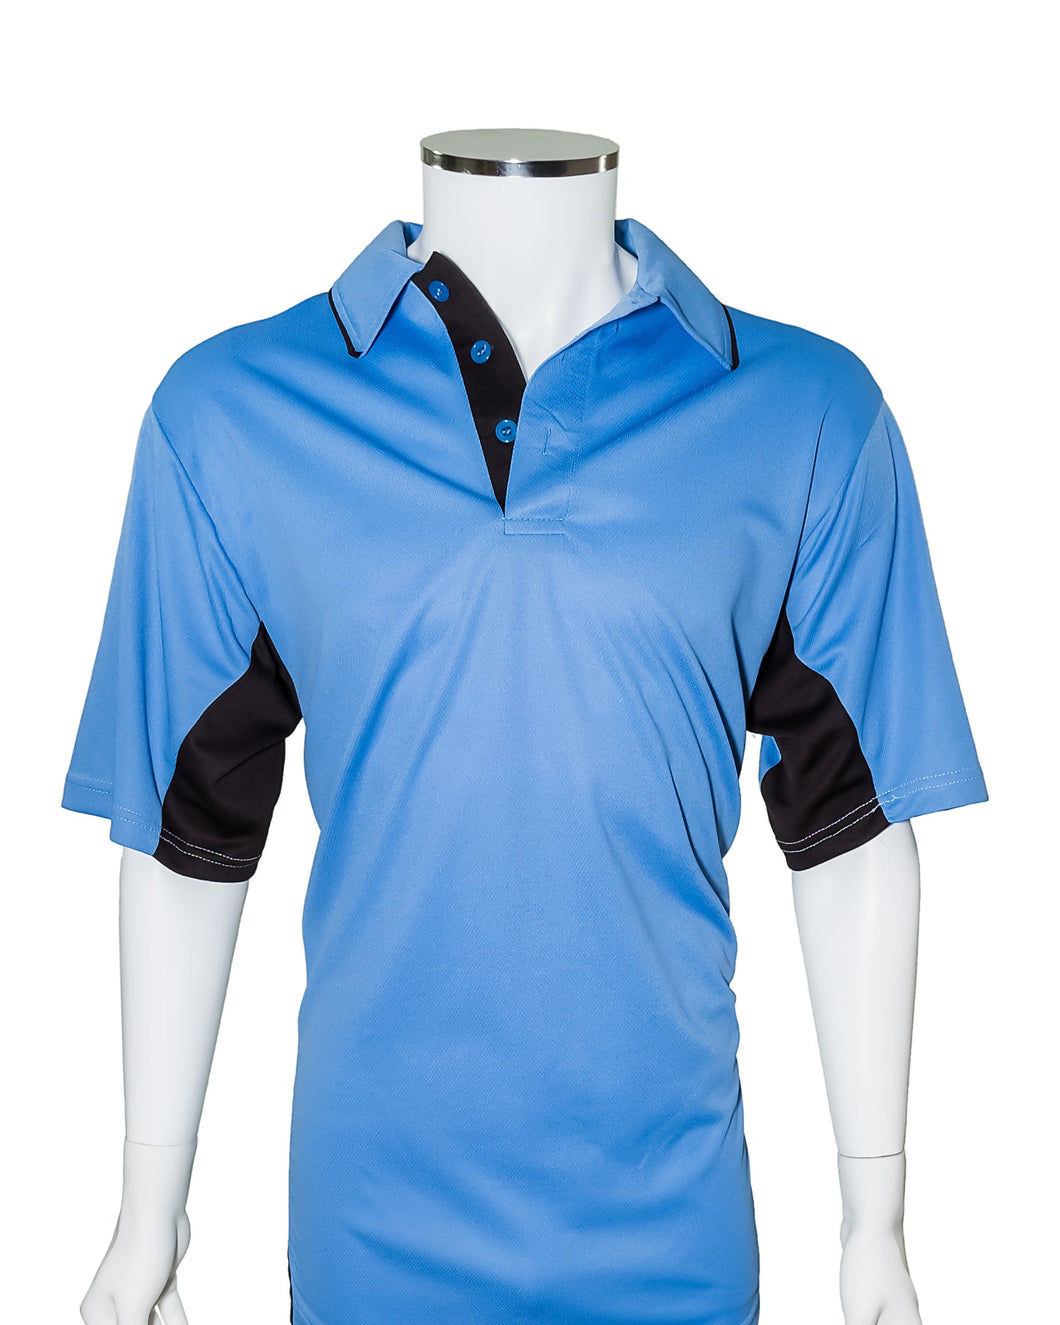 Current Major League Replica Umpire Shirt - SKY BLUE with BLACK - Officials Depot